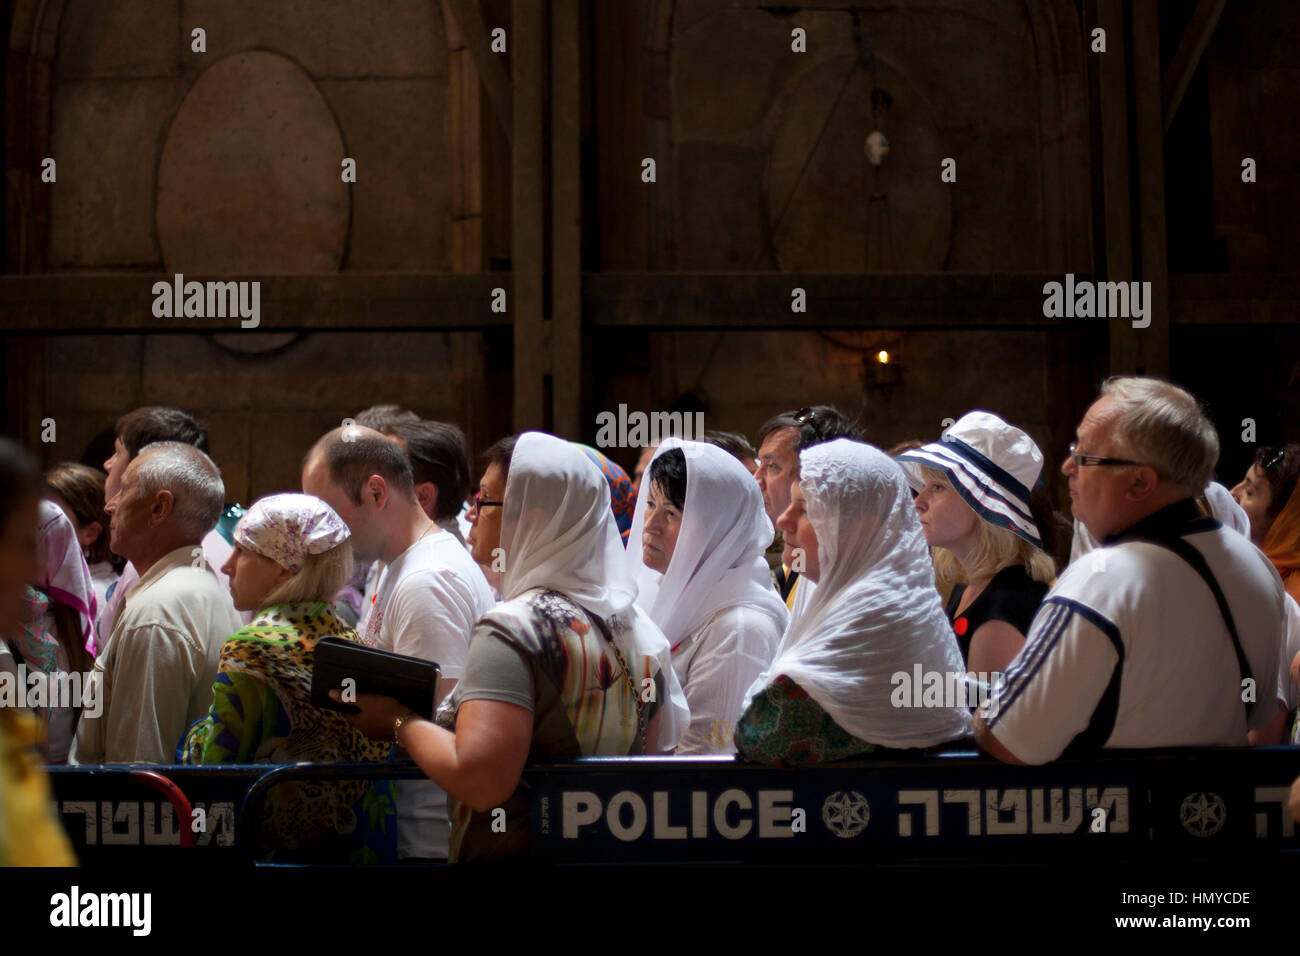 Gerusalemme, Israele - 30 maggio 2014: pellegrini affollano davanti all'ingresso di aedicula, luogo ritiene essere la tomba di Cristo. aedicula è circondata Foto Stock